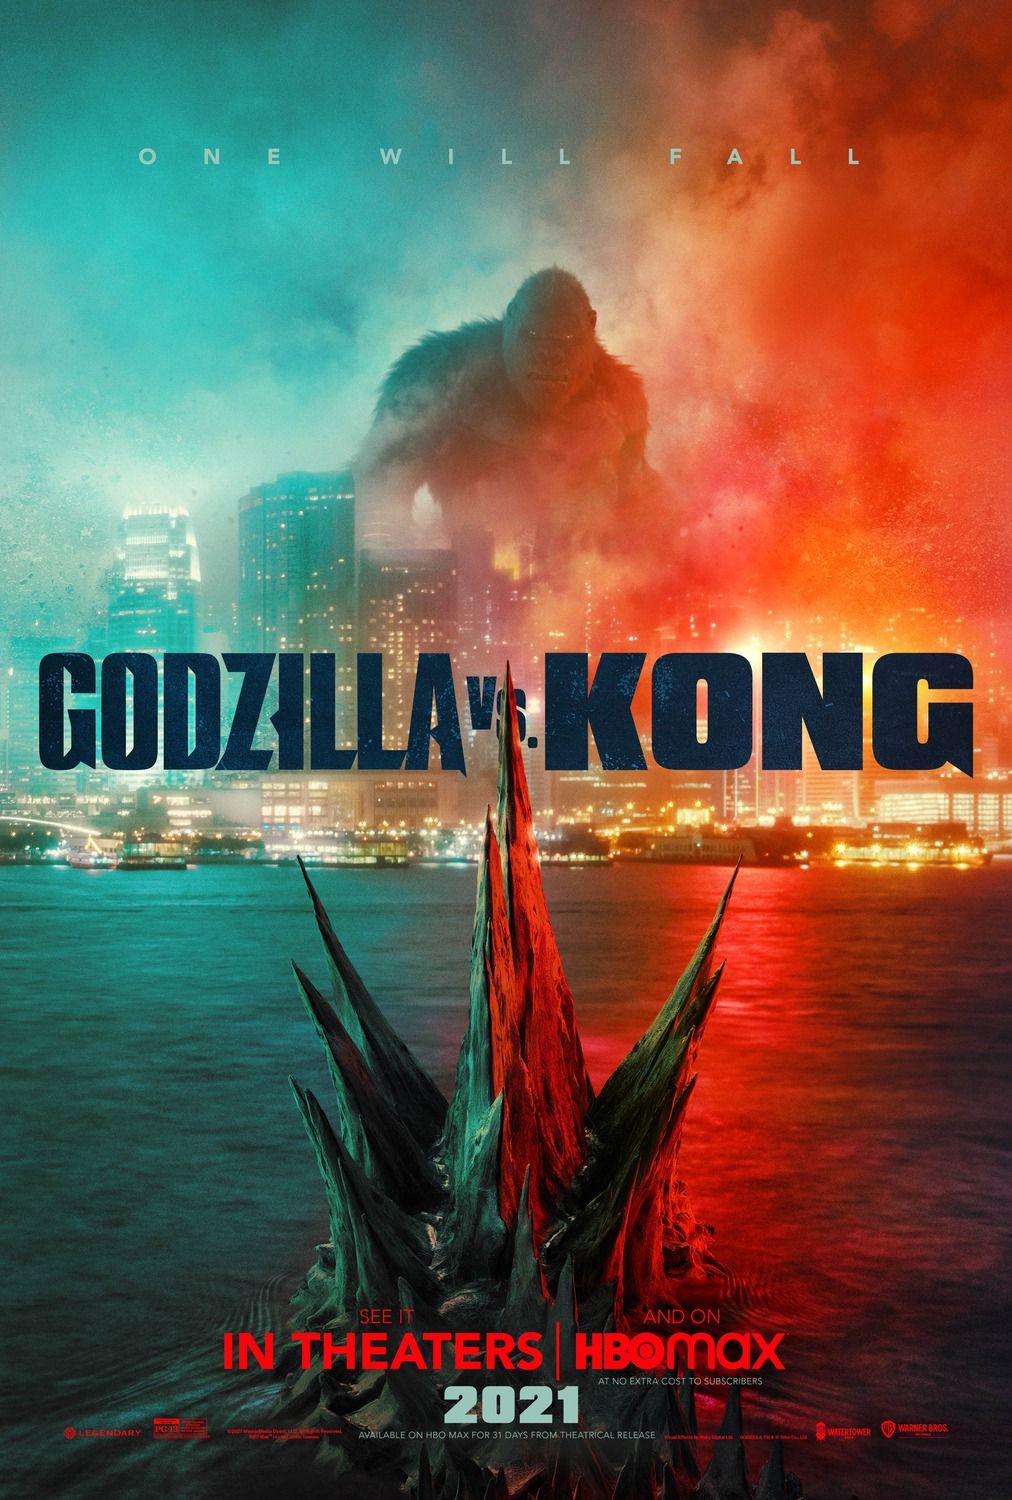 Godzilla vs Kong (2021) Hindi Dubbed Full Movie